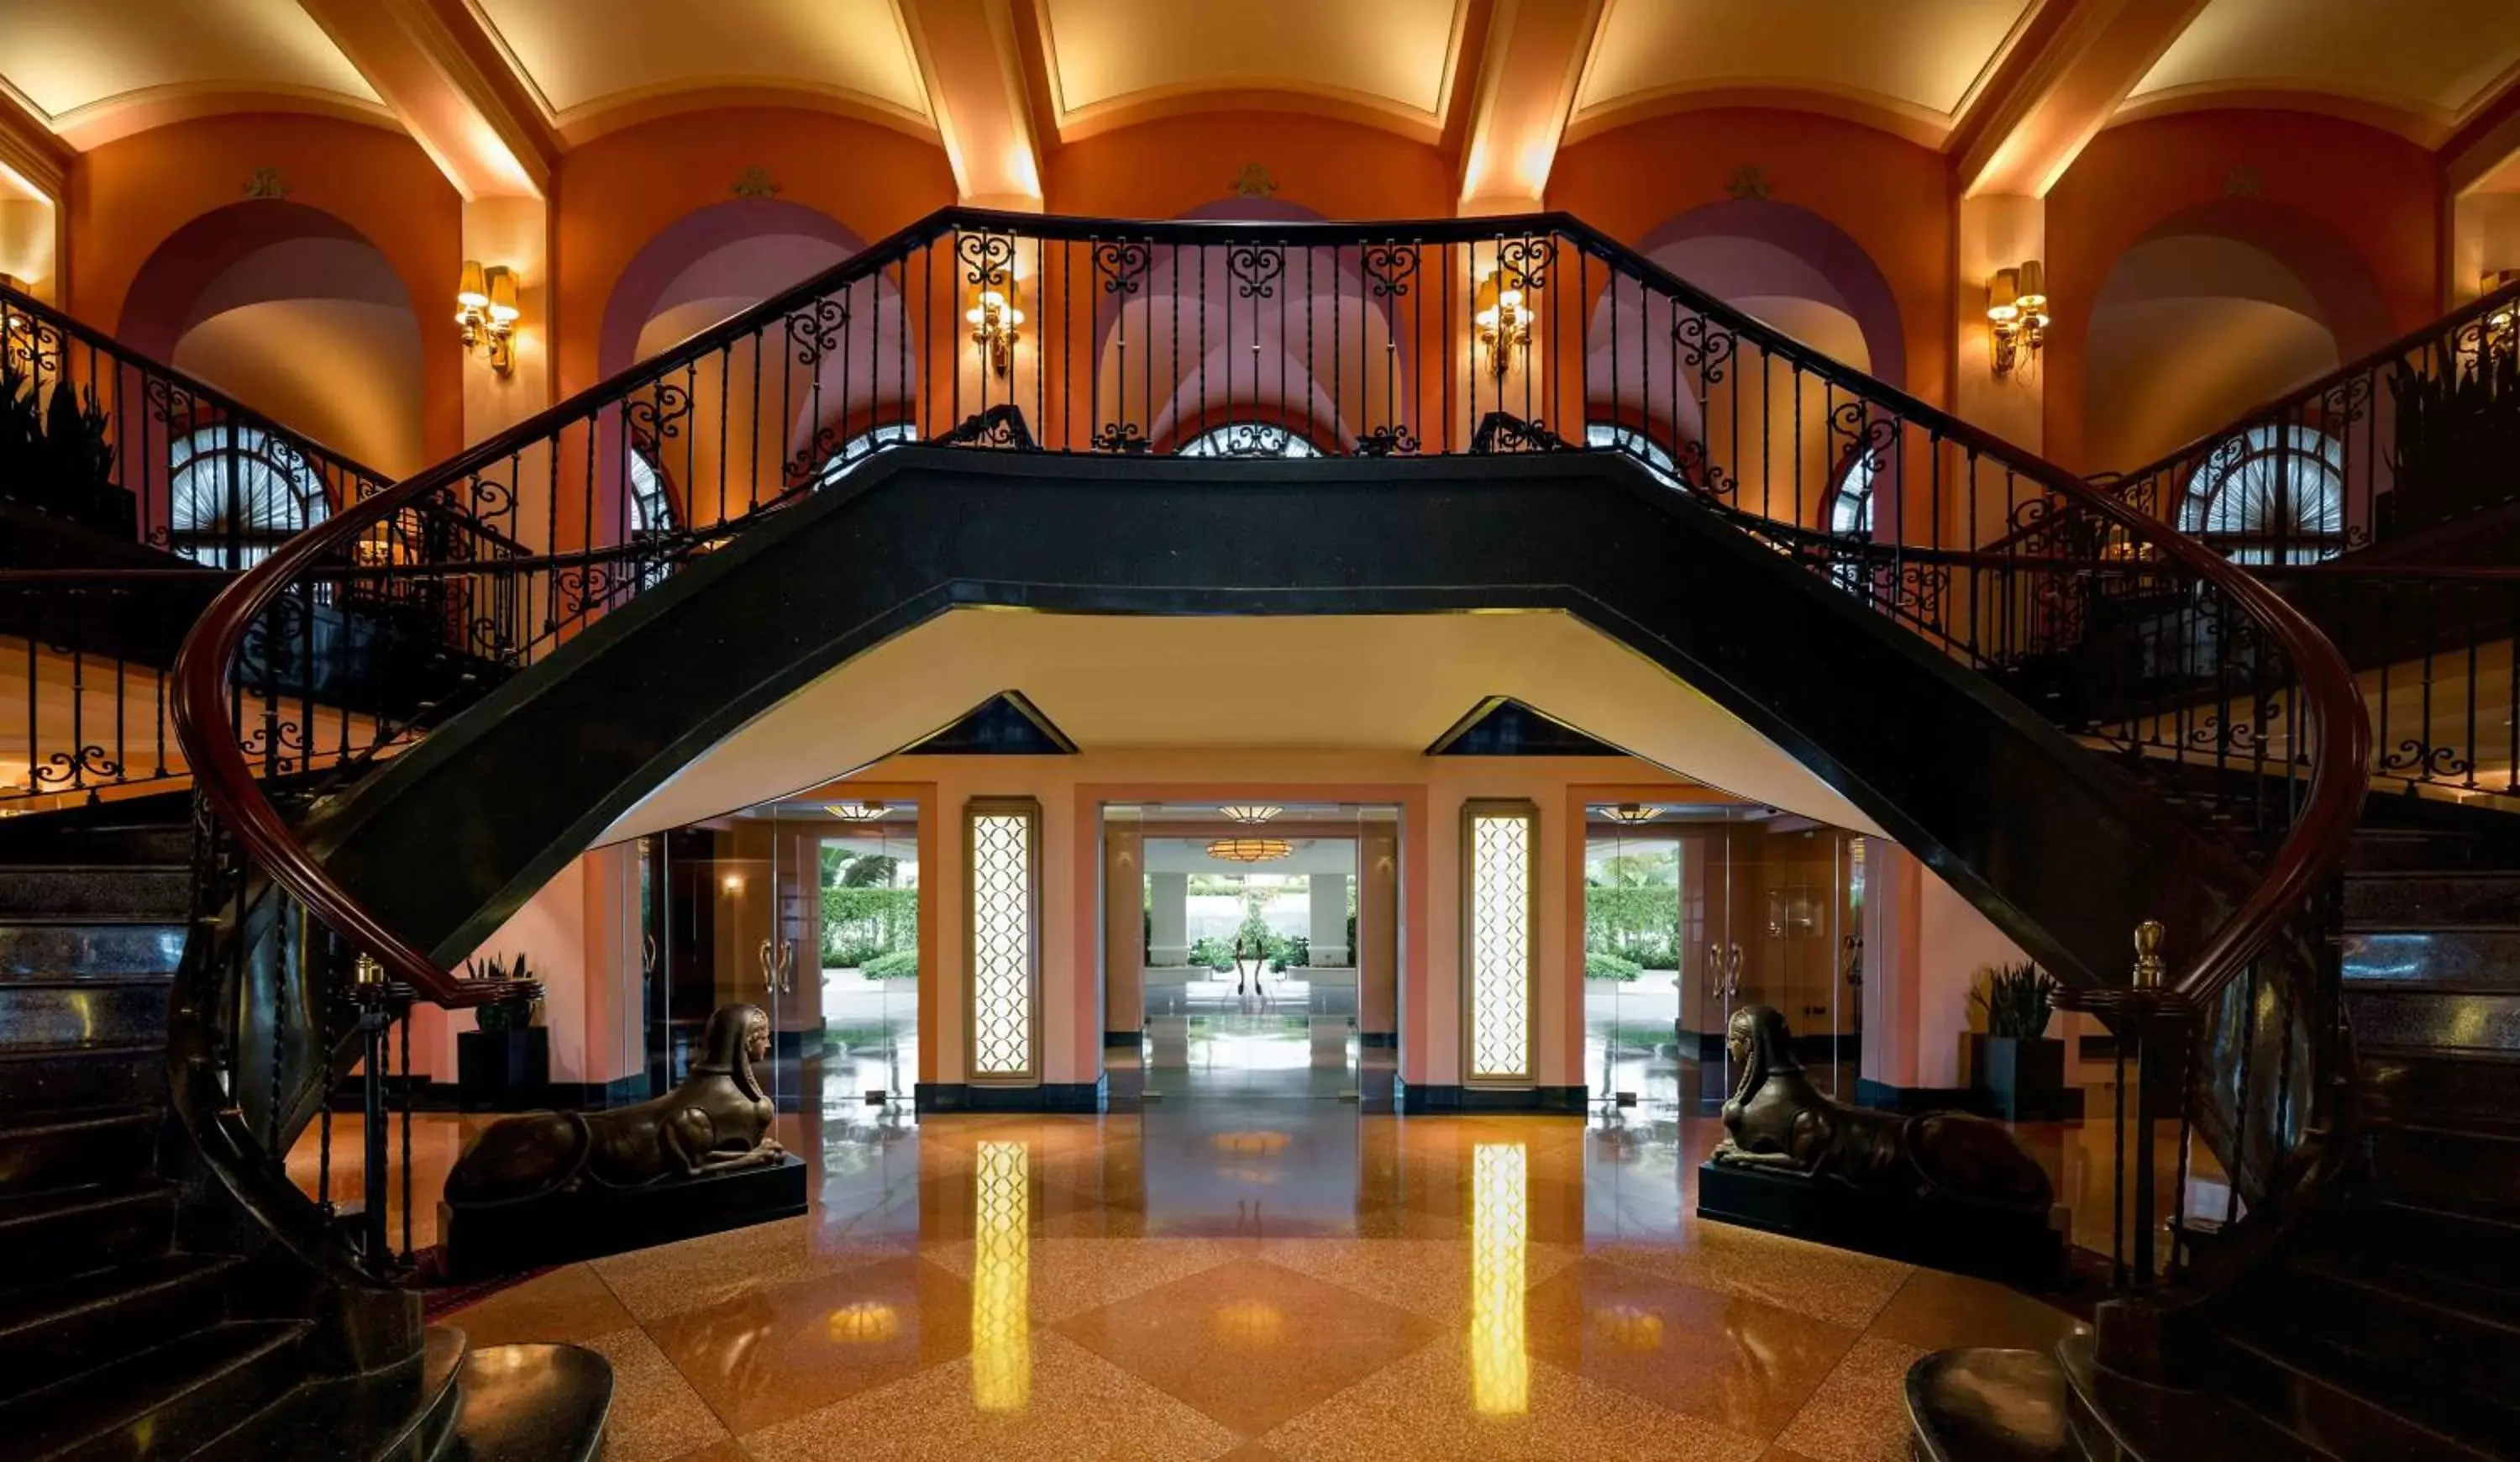 Lobby or reception in Condado Vanderbilt Hotel